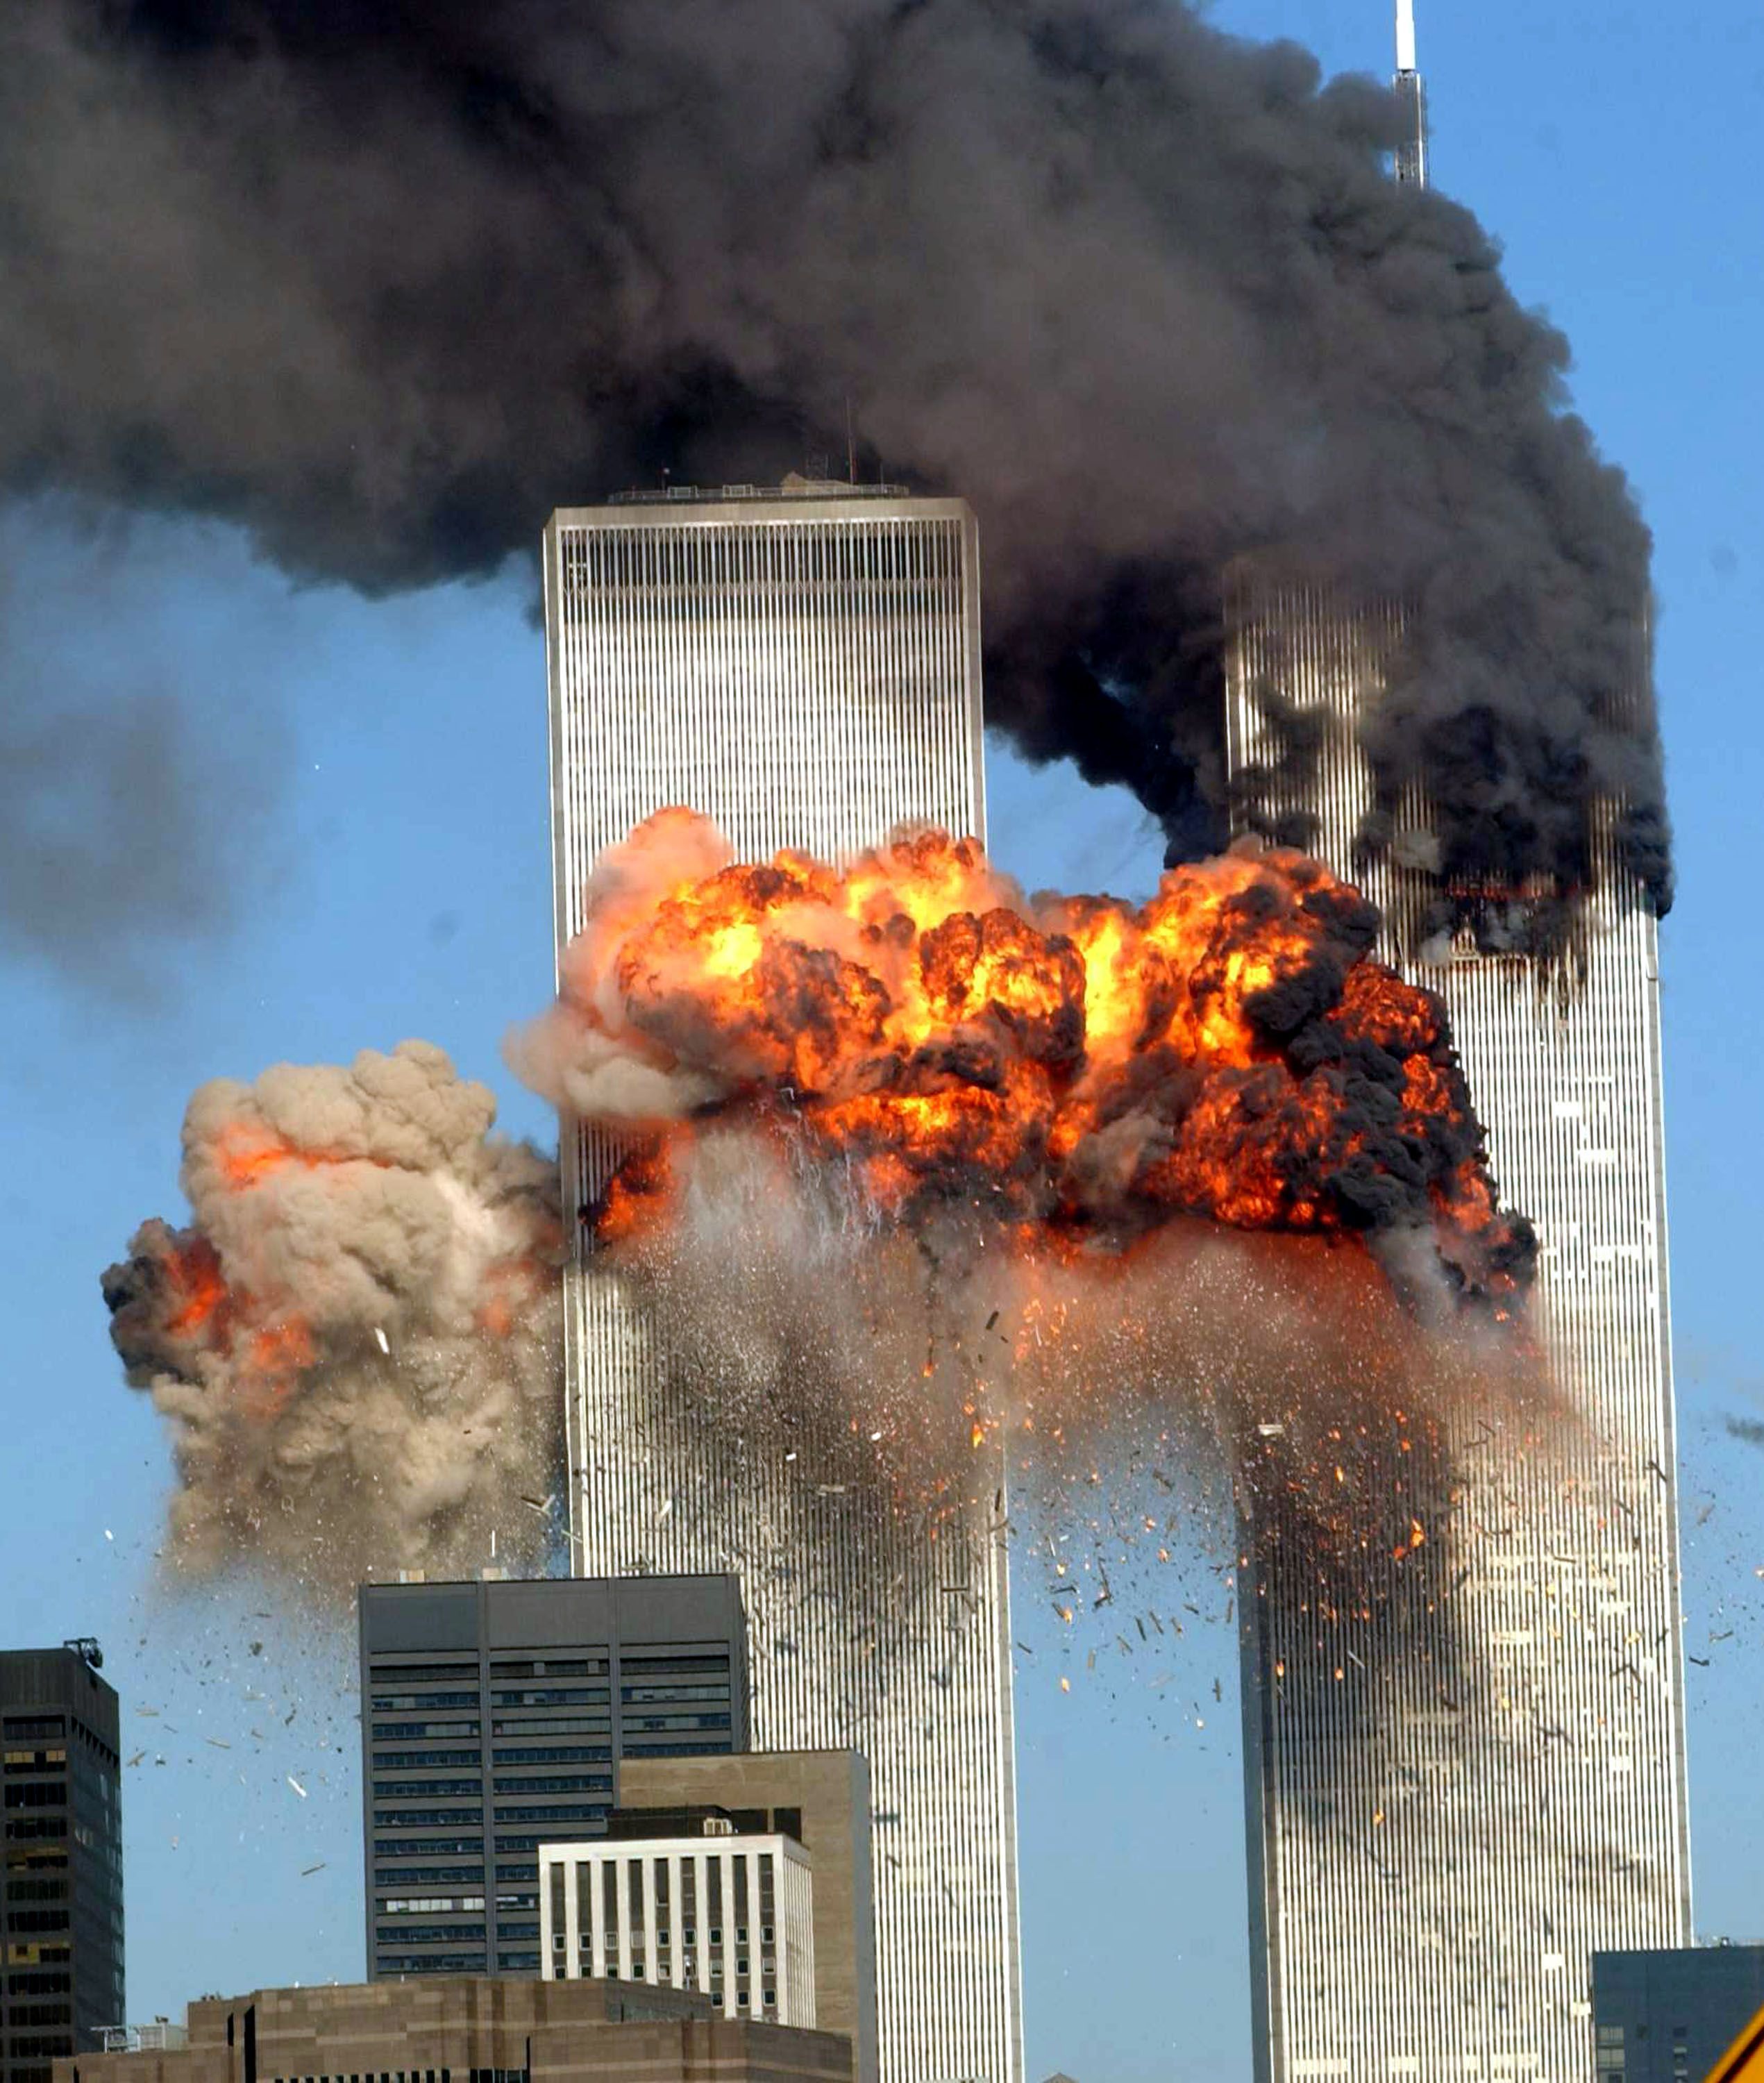 Přerušujeme vysílání. TV a přetížený internet informovali o útocích 11. září 2001 jen chvíli po tragédii, svět dodnes vzpomíná